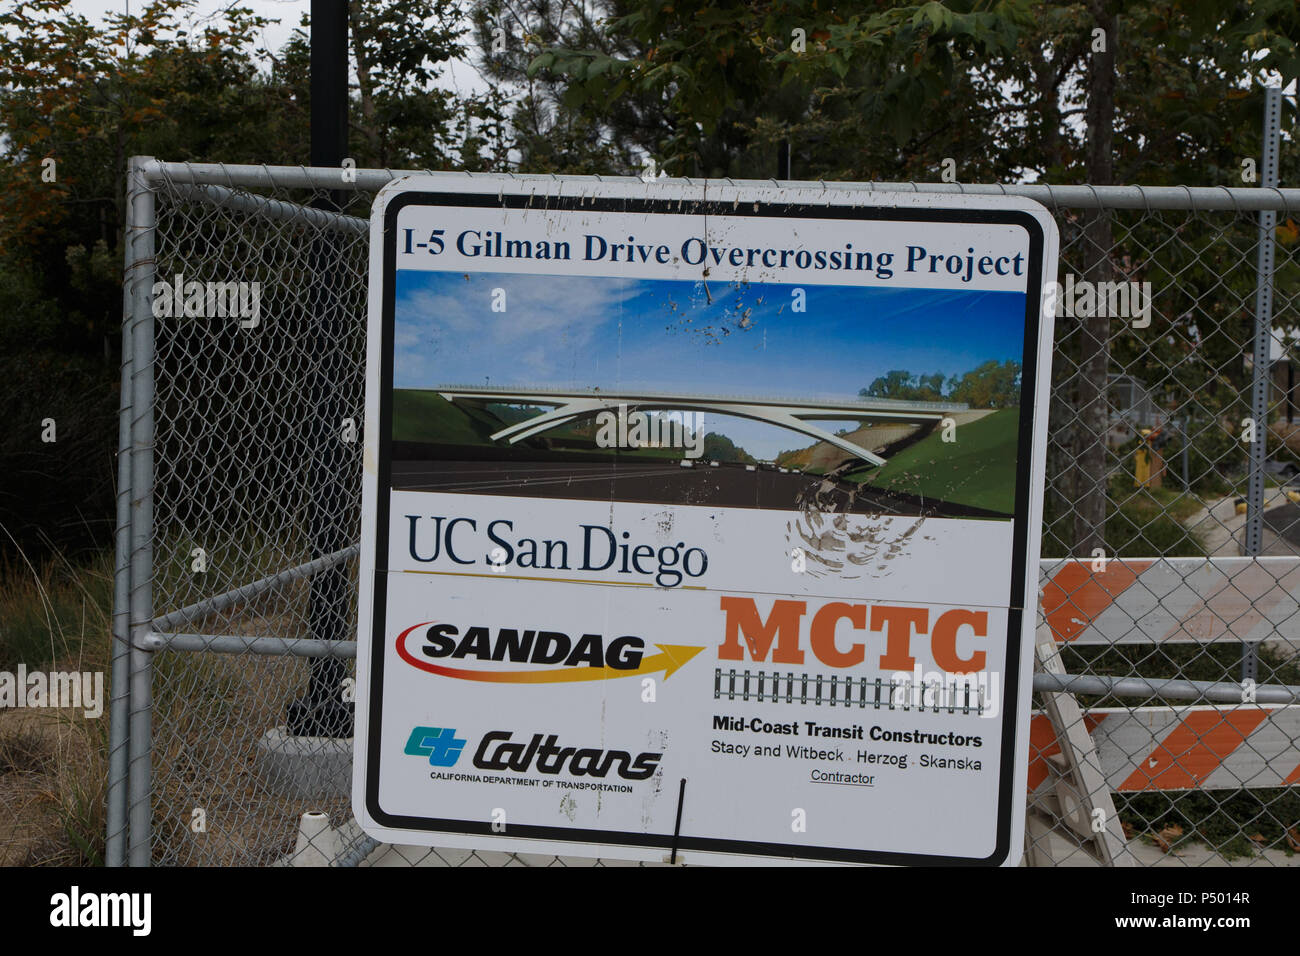 Il carrello Mid-Coast estensione in costruzione a San Diego, California università del centro città e regione UCSD. Giugno 23, 2018. Foto Stock